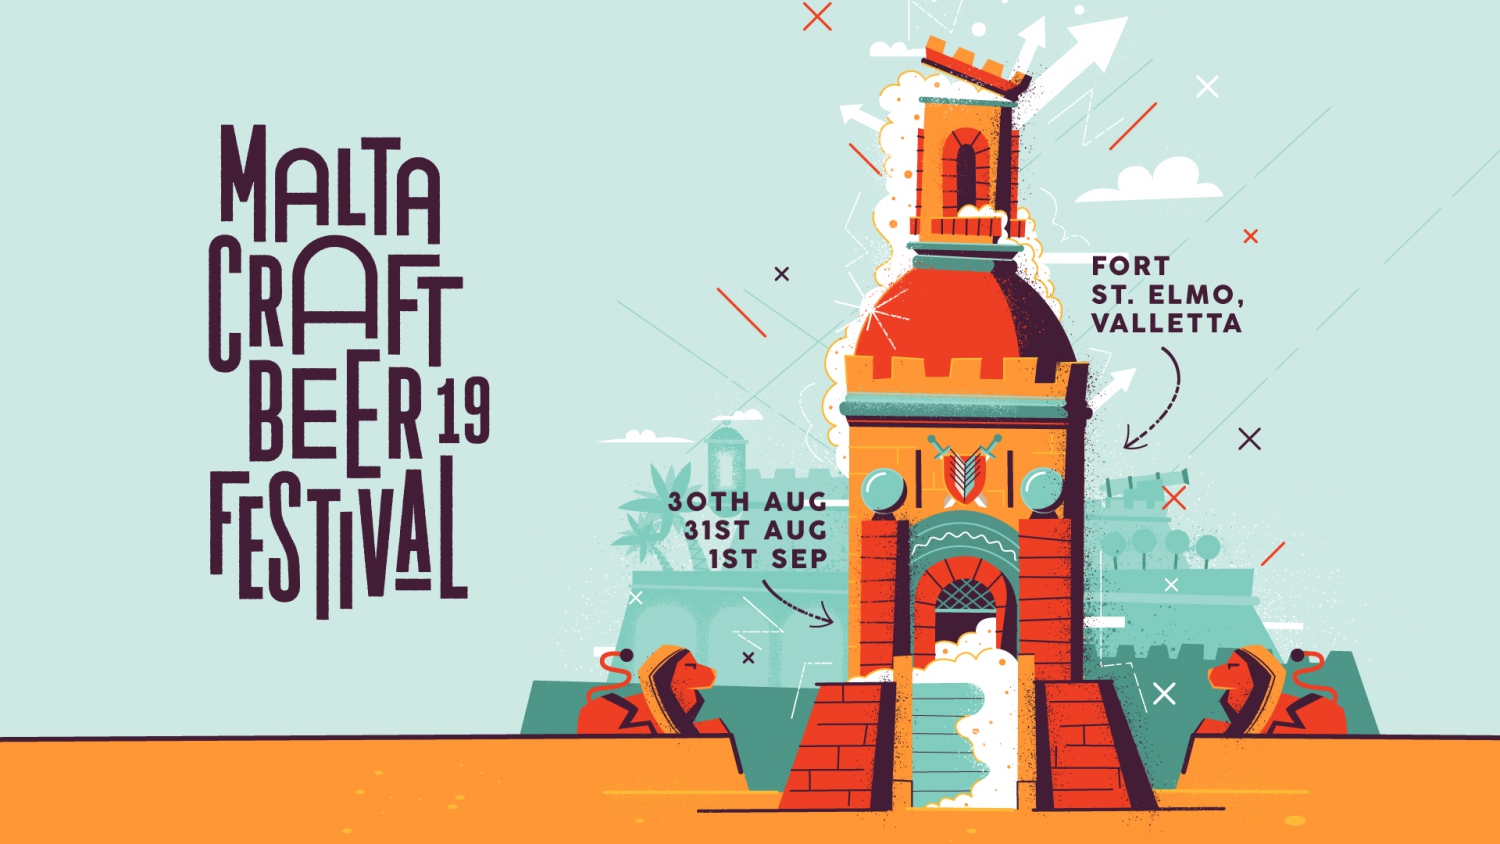 Malta Craft Beer Festival 2019